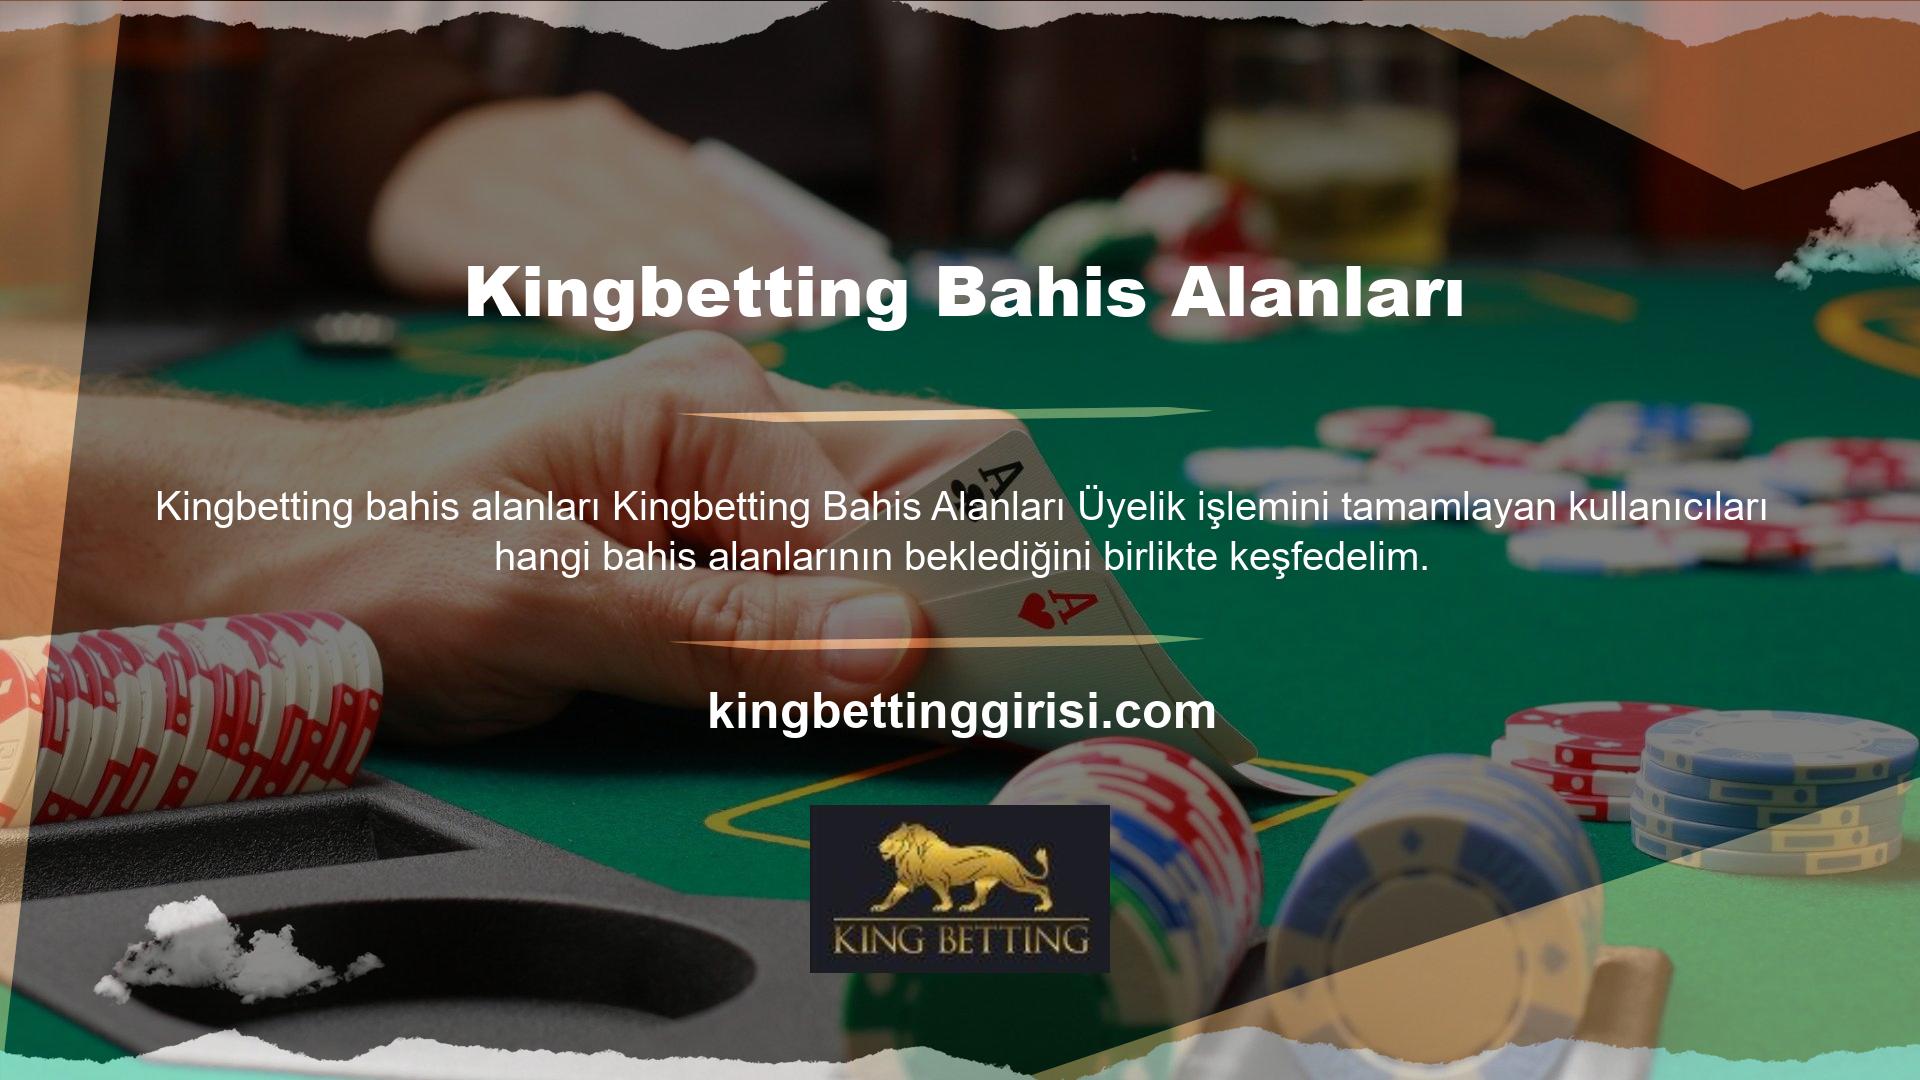 Kingbetting bahis oyunları hakkında bilgi veriyor ve oynayabileceğiniz bahis türleri hakkında sizi bilgilendiriyoruz